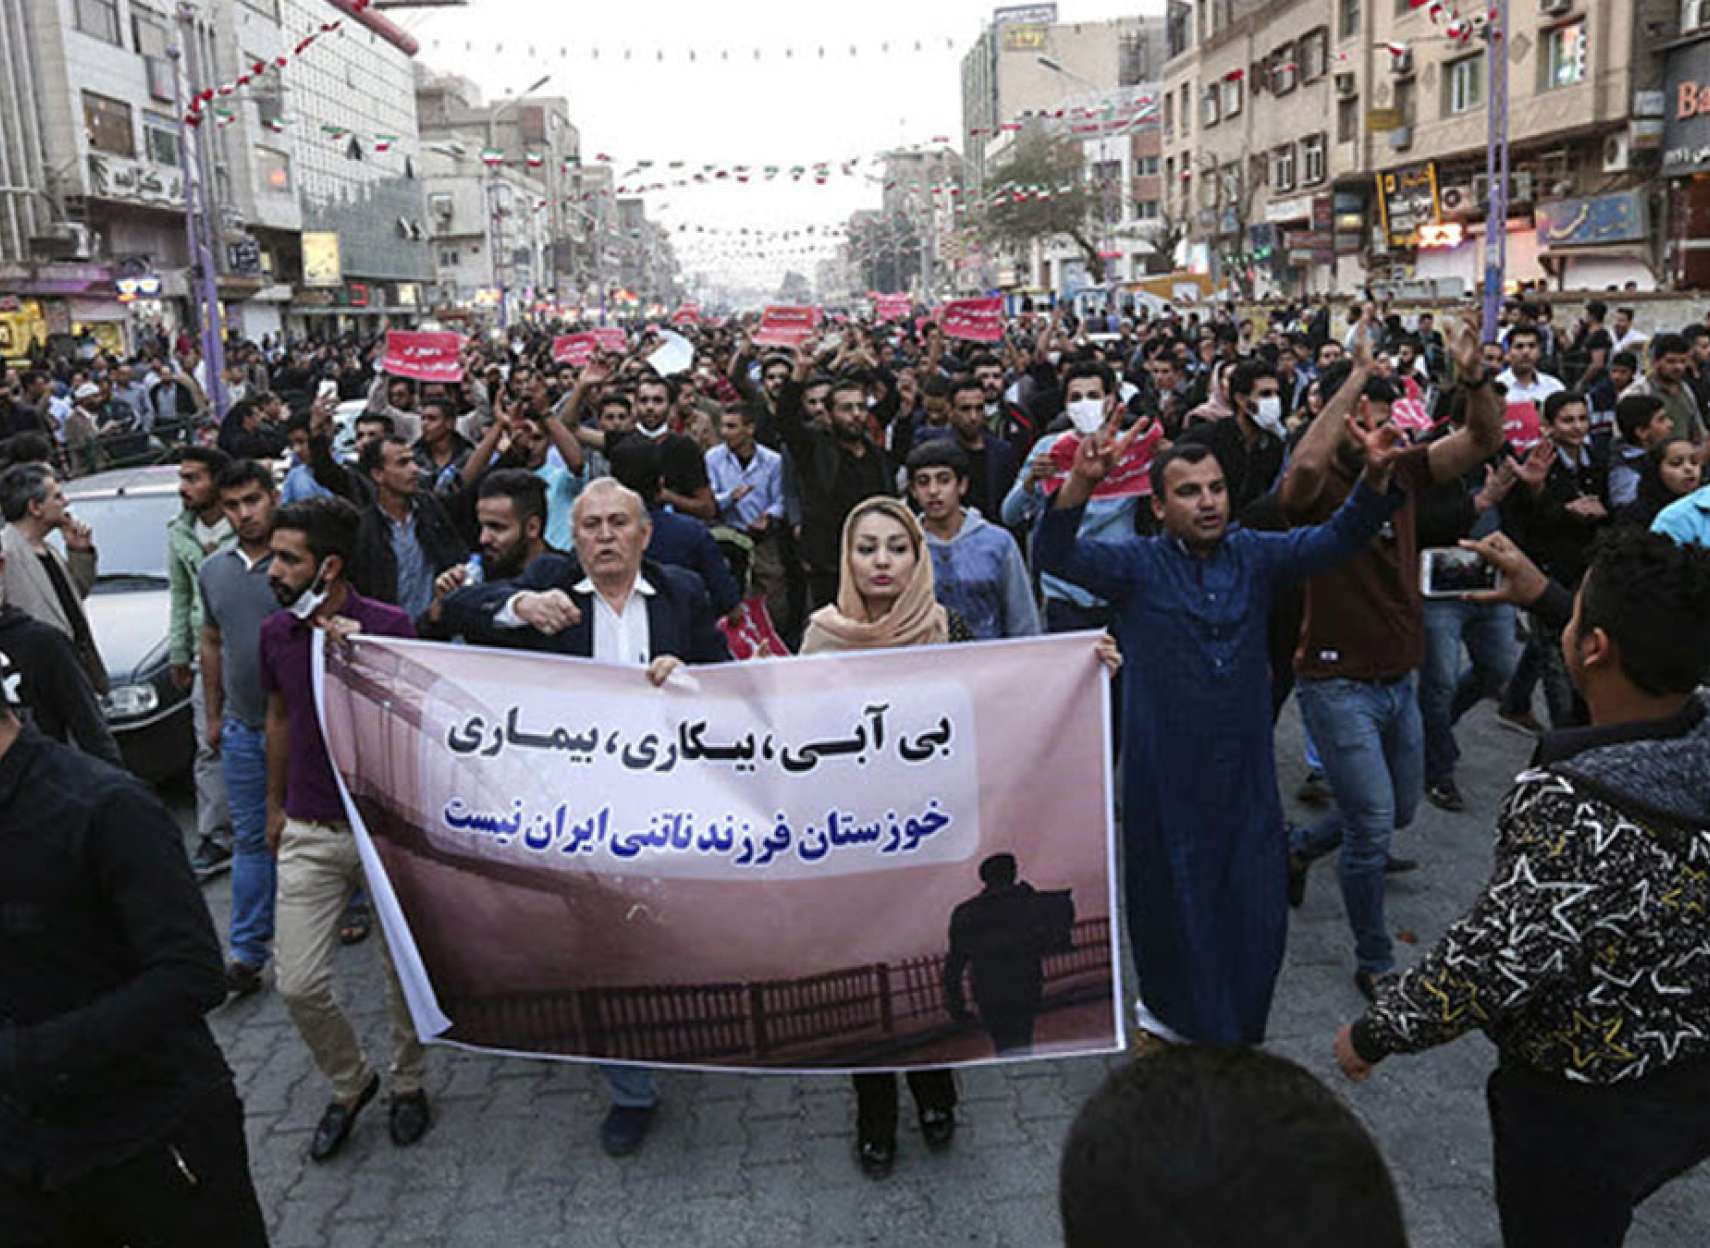 خبر-ایران-گسترش-تظاهرات-و-اعتراضات-خوزستان-به-تهران-و-سراسر-ایران